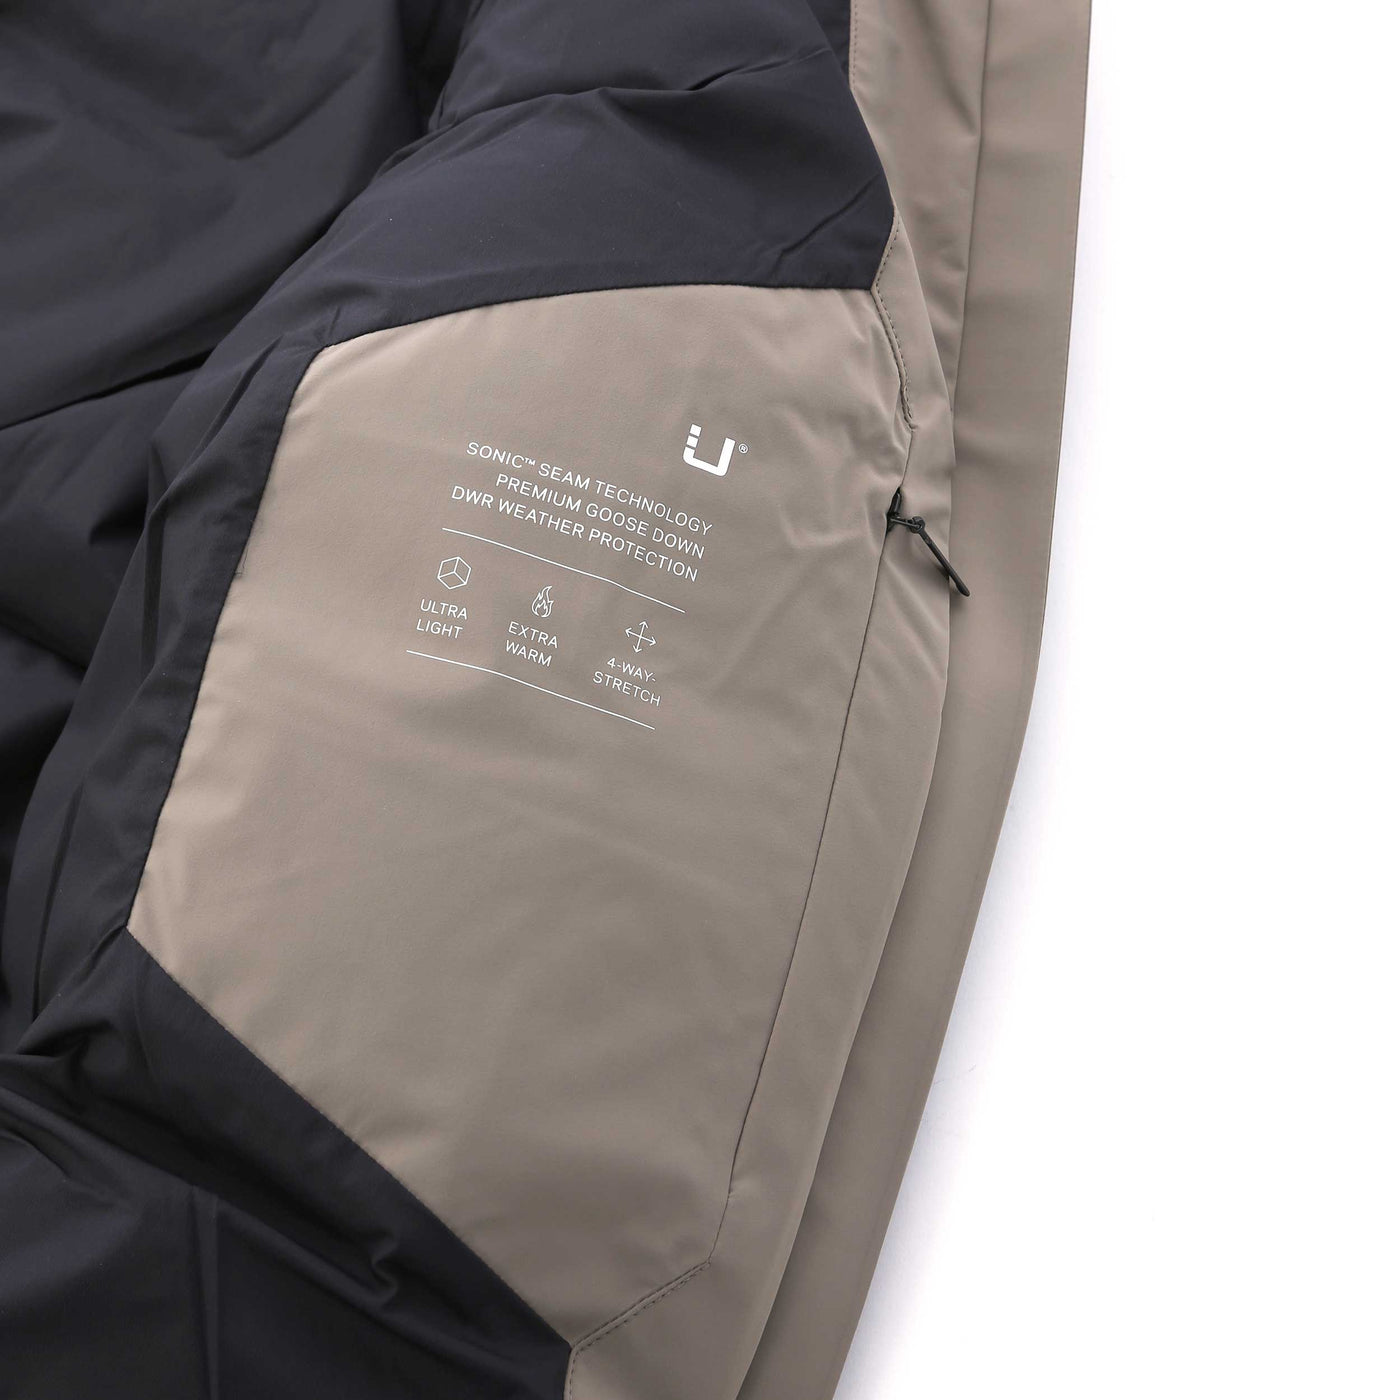 UBR Infinity Ladies Coat in Sand Details